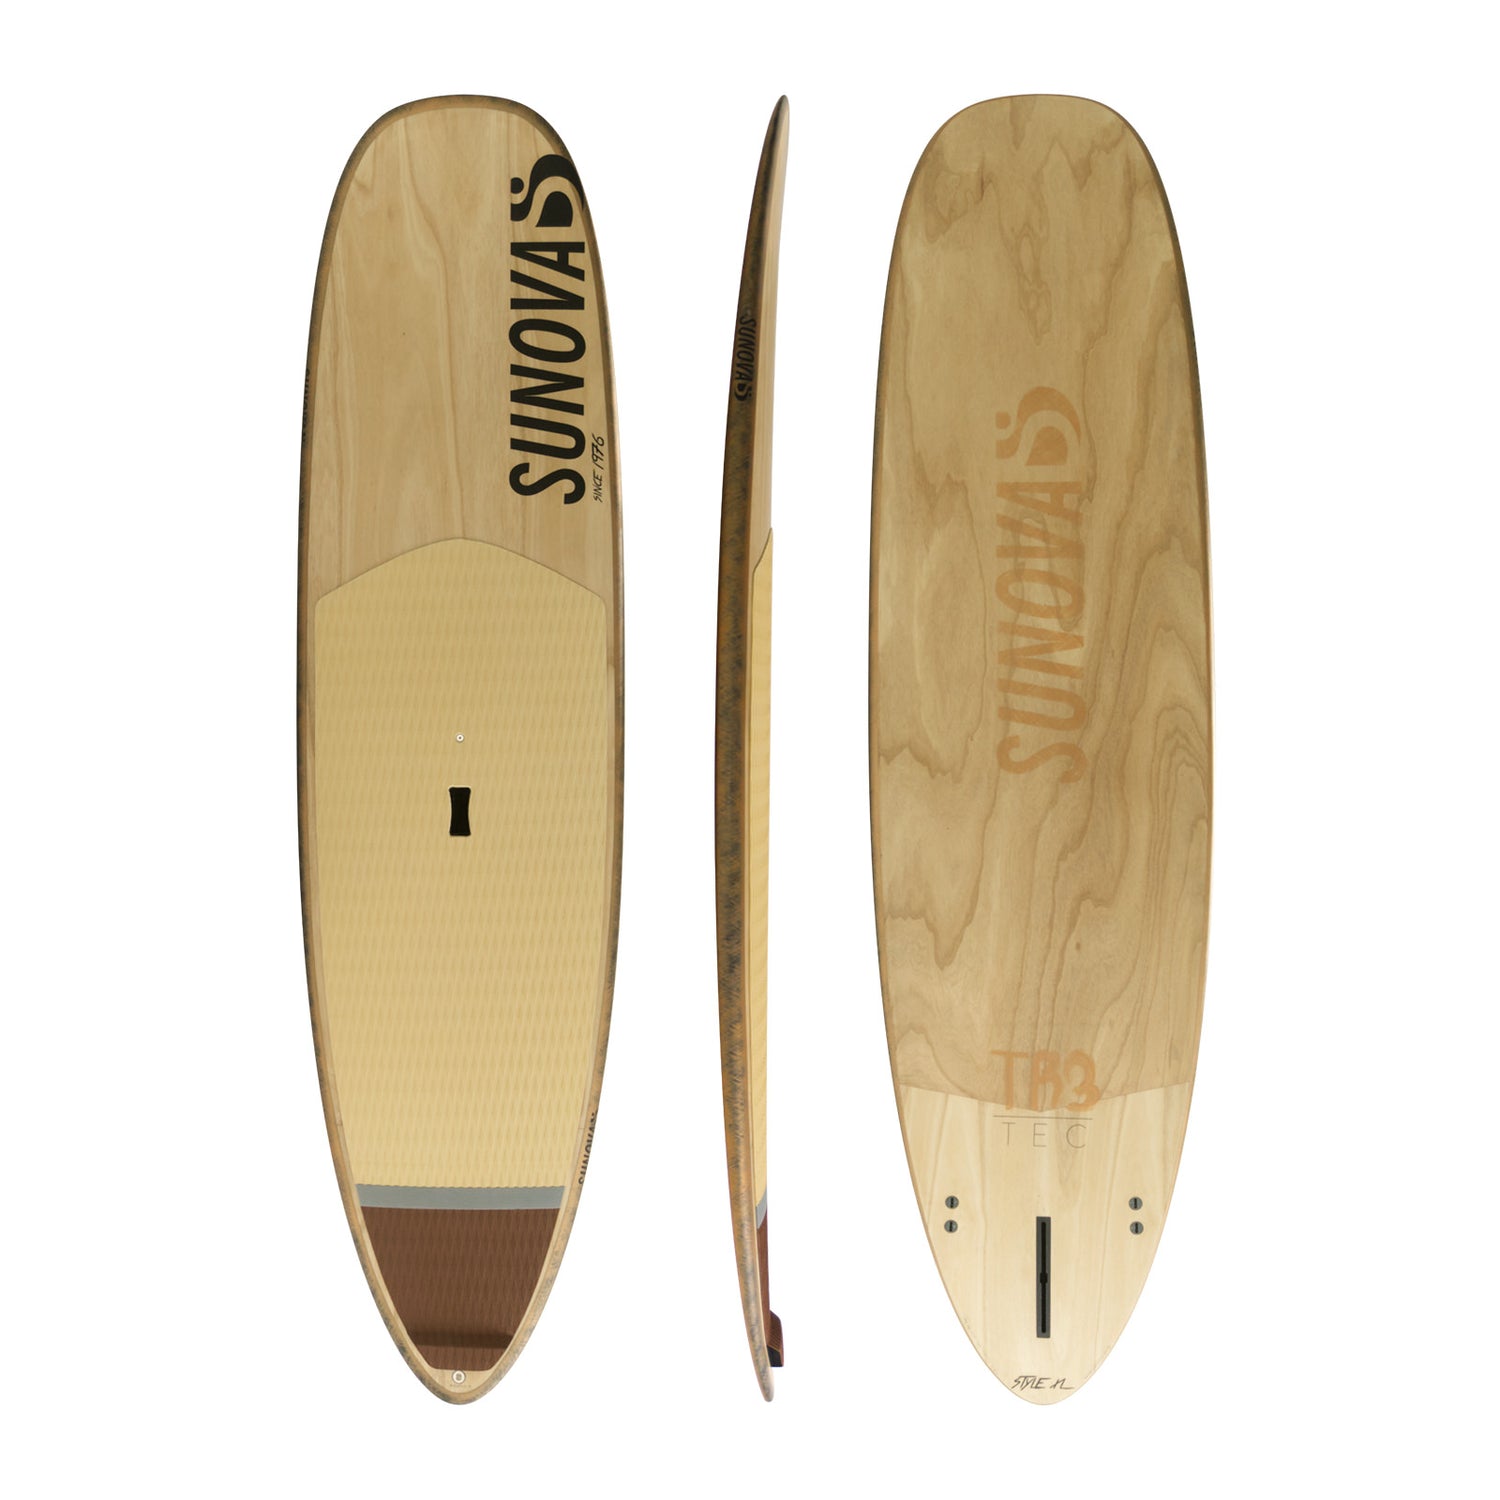 Drei Ansichten des Sunova Style Wave SUP Board in der TR3 Bauweise.